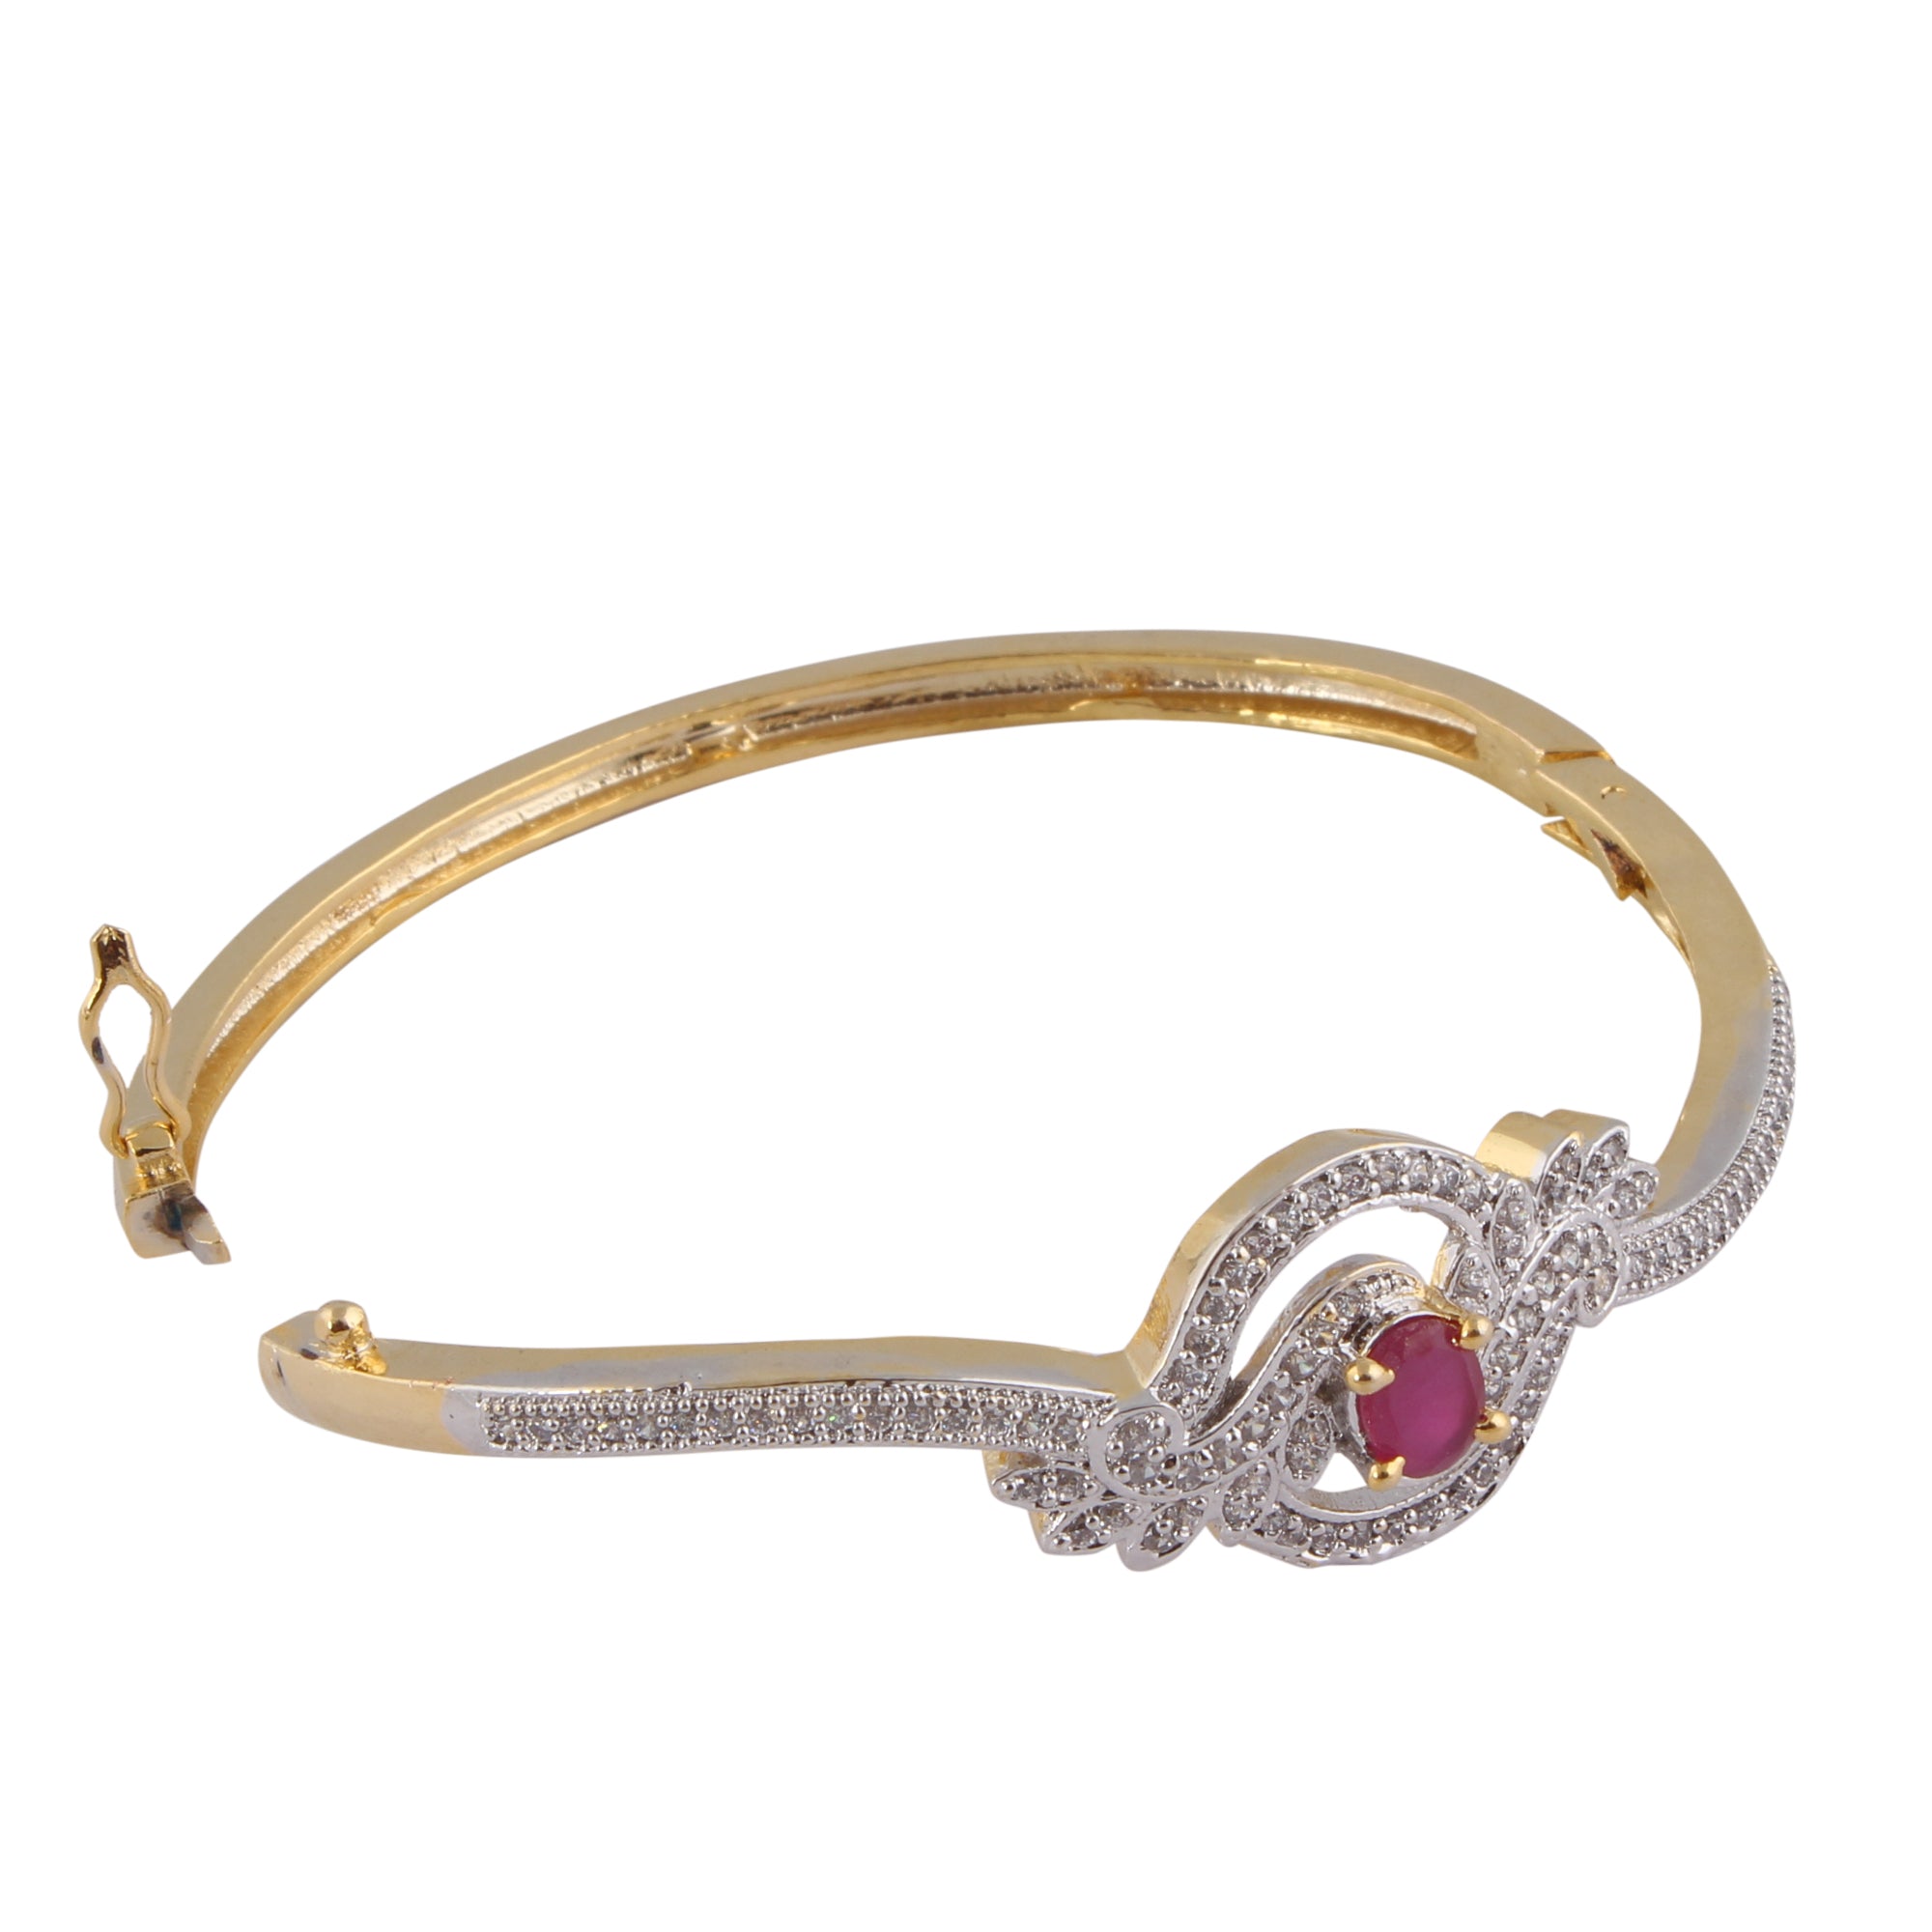 Indian Jewellery from Meira Jewellery:Bracelet,Meira Jewellery Bracelet with  Red Ruby and American melee diamonds for Women